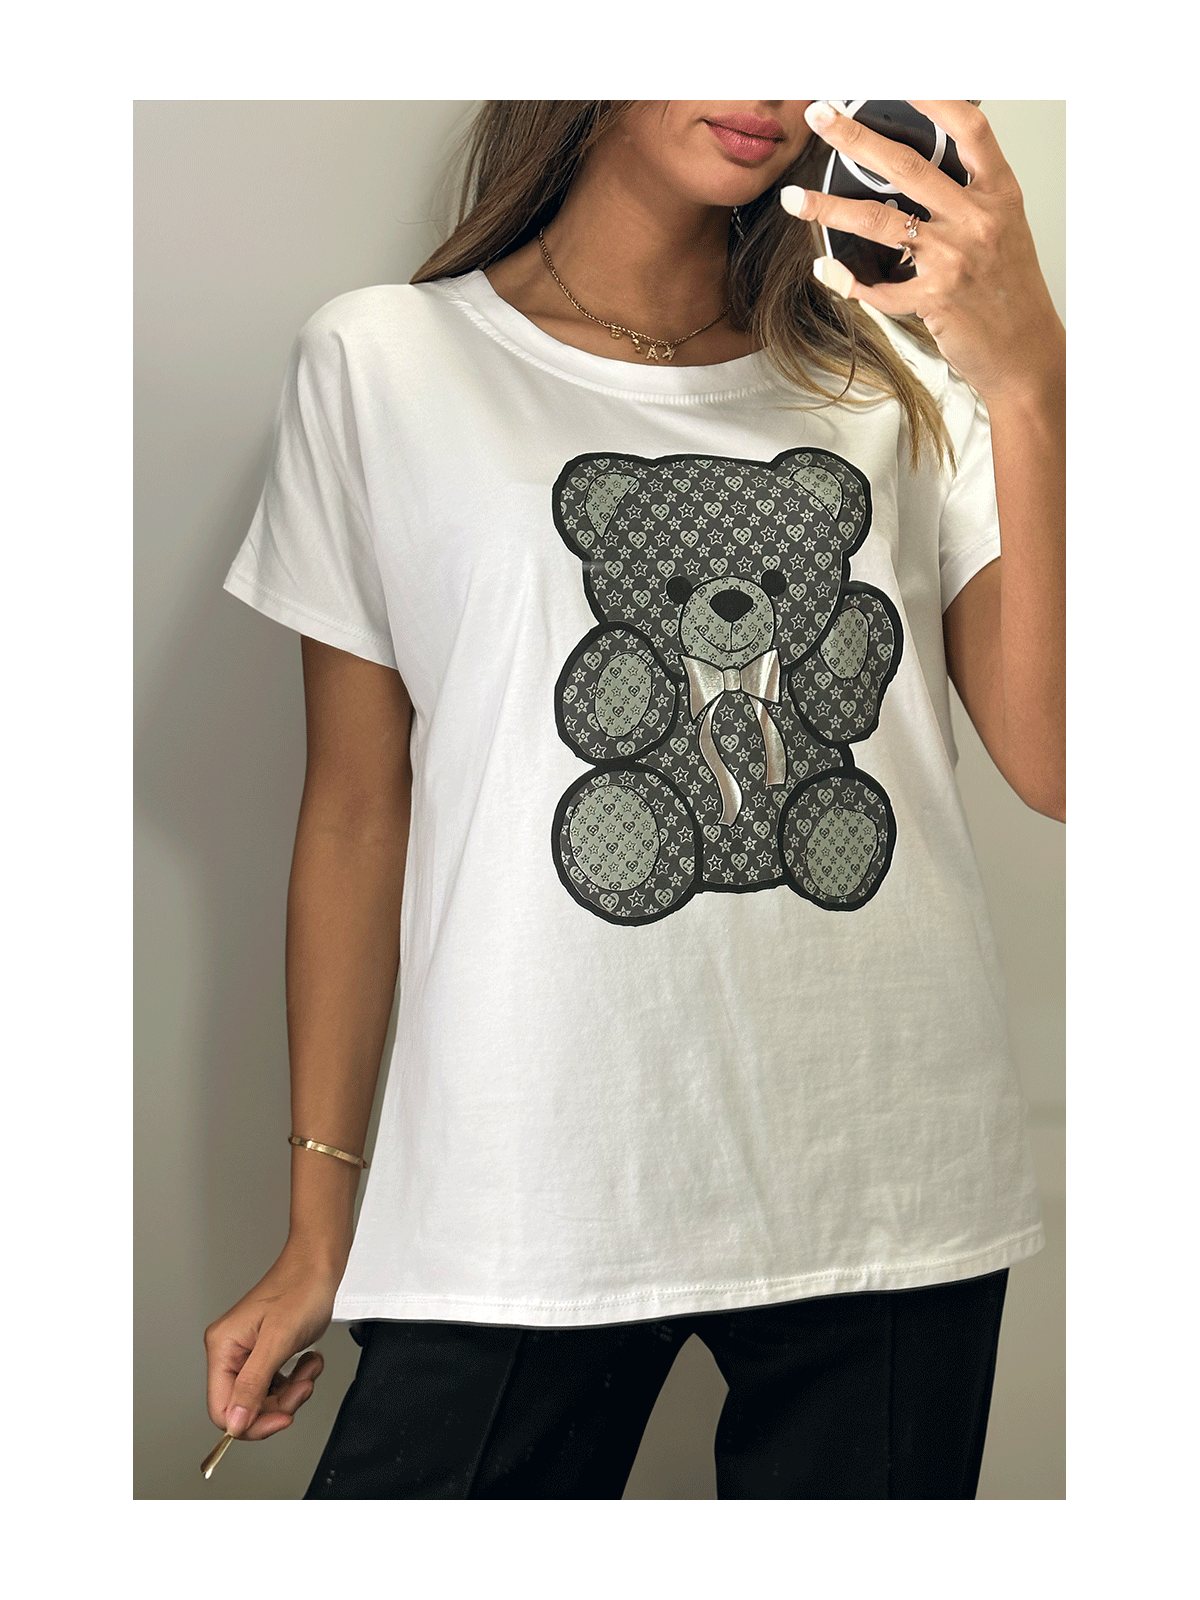 Tshirt blanc imprimé ours noir - 1